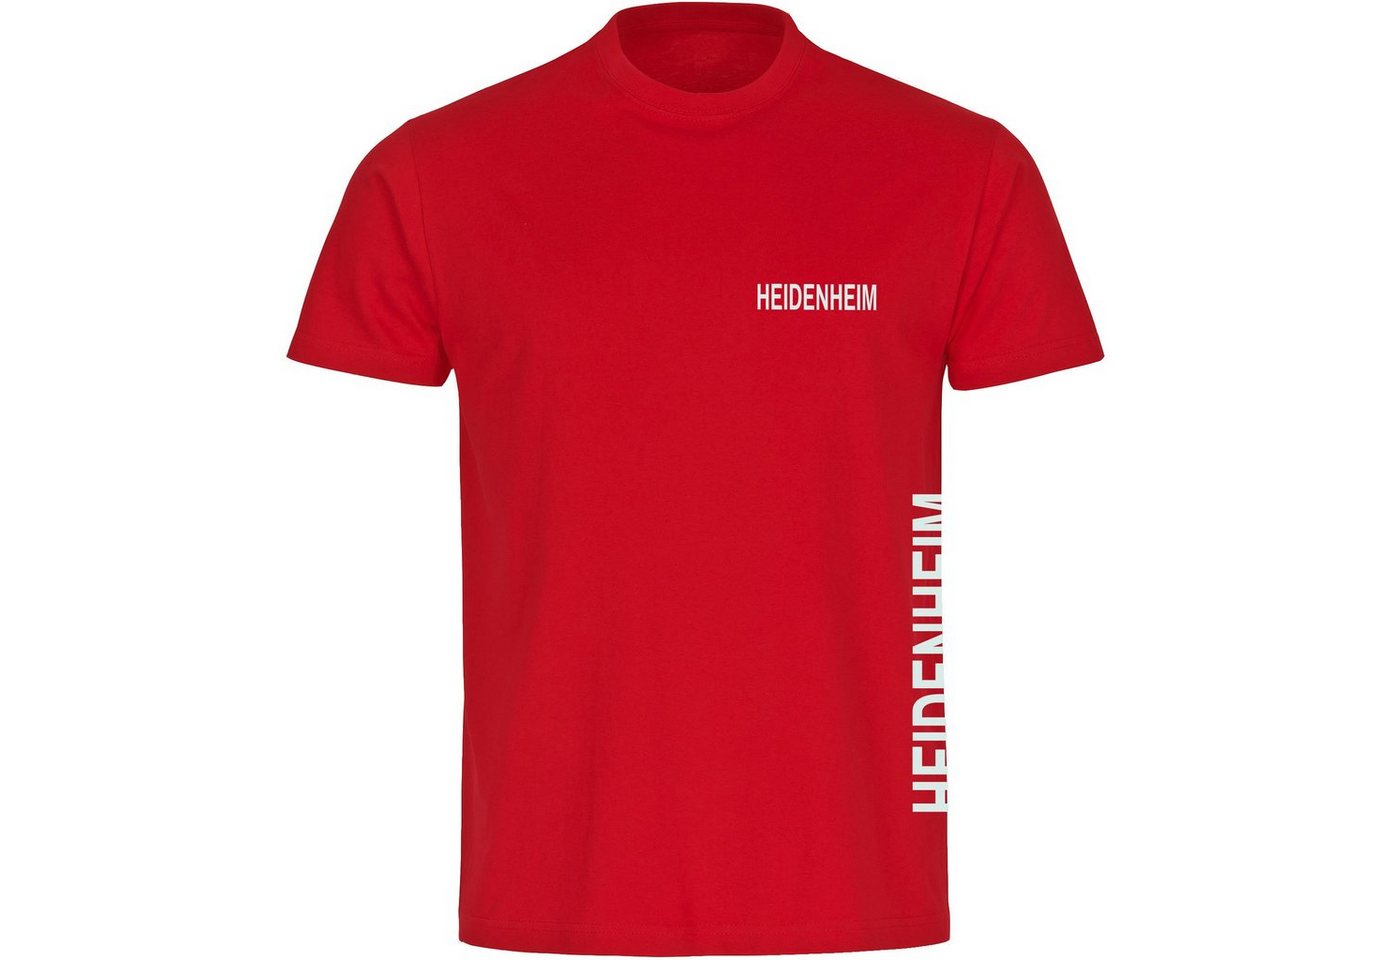 multifanshop T-Shirt Herren Heidenheim - Brust & Seite - Männer von multifanshop